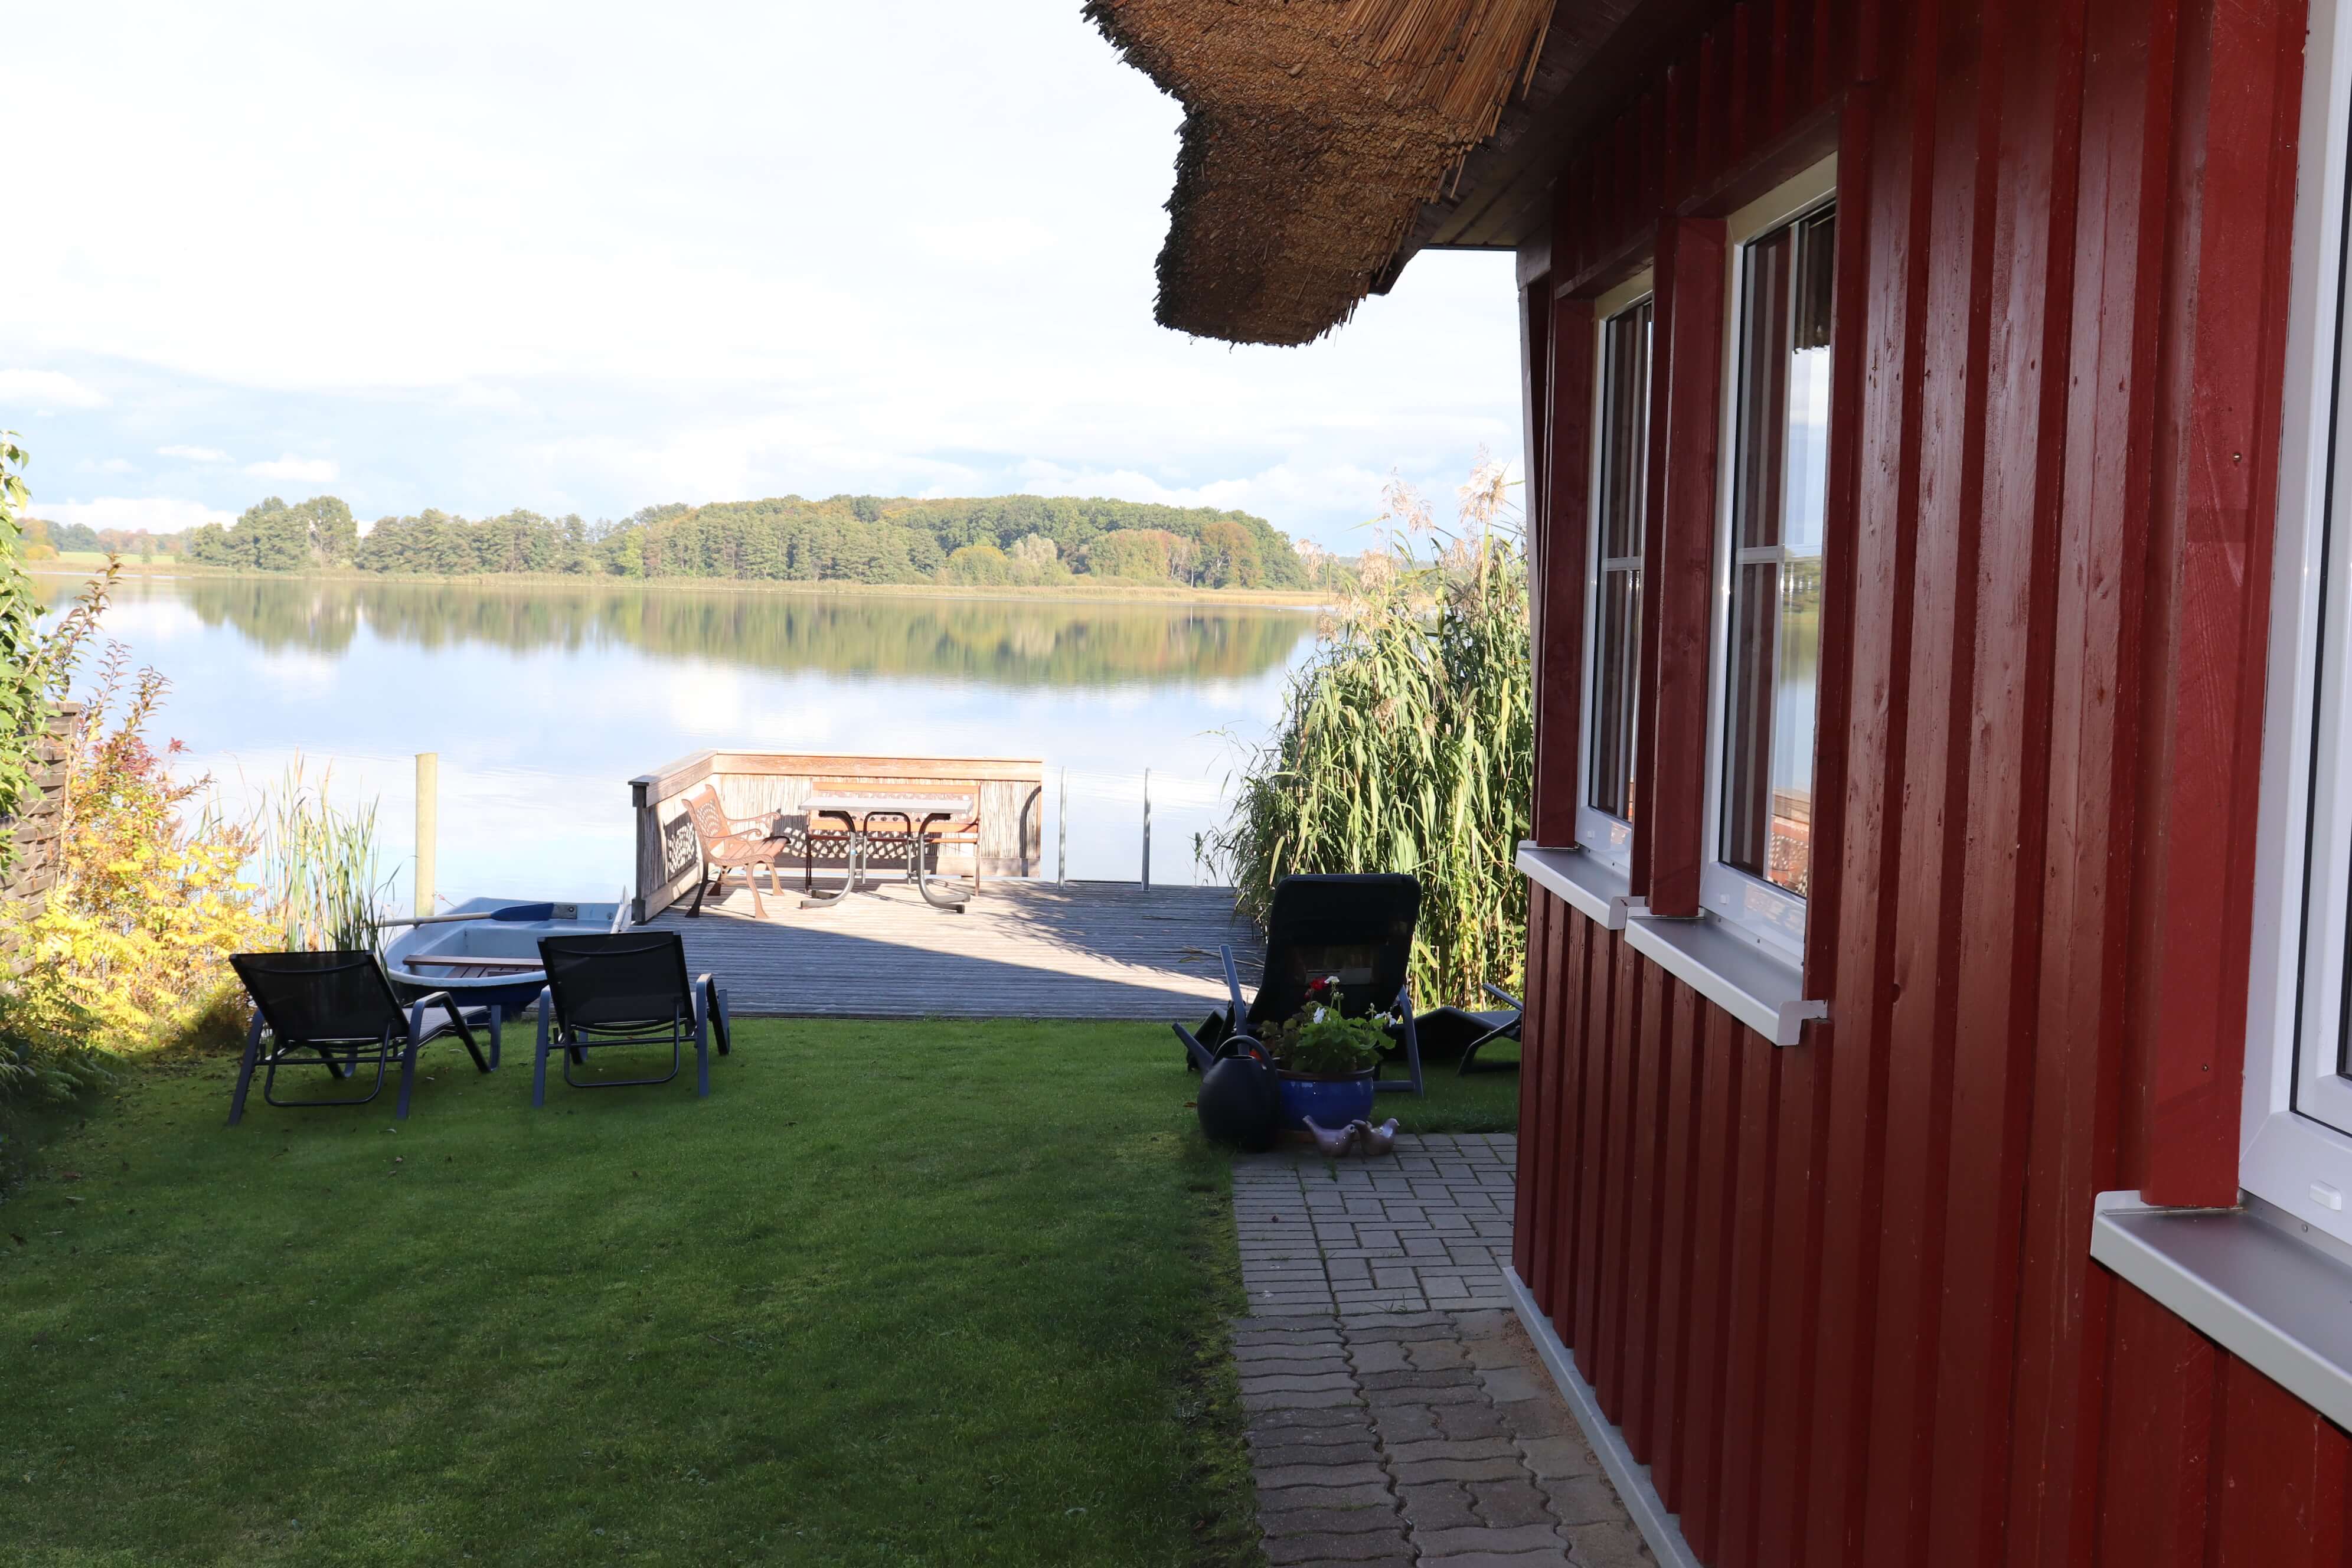 Vordereingang zum kleinen Ferienhaus der Familie Ohde am Sternberger See.